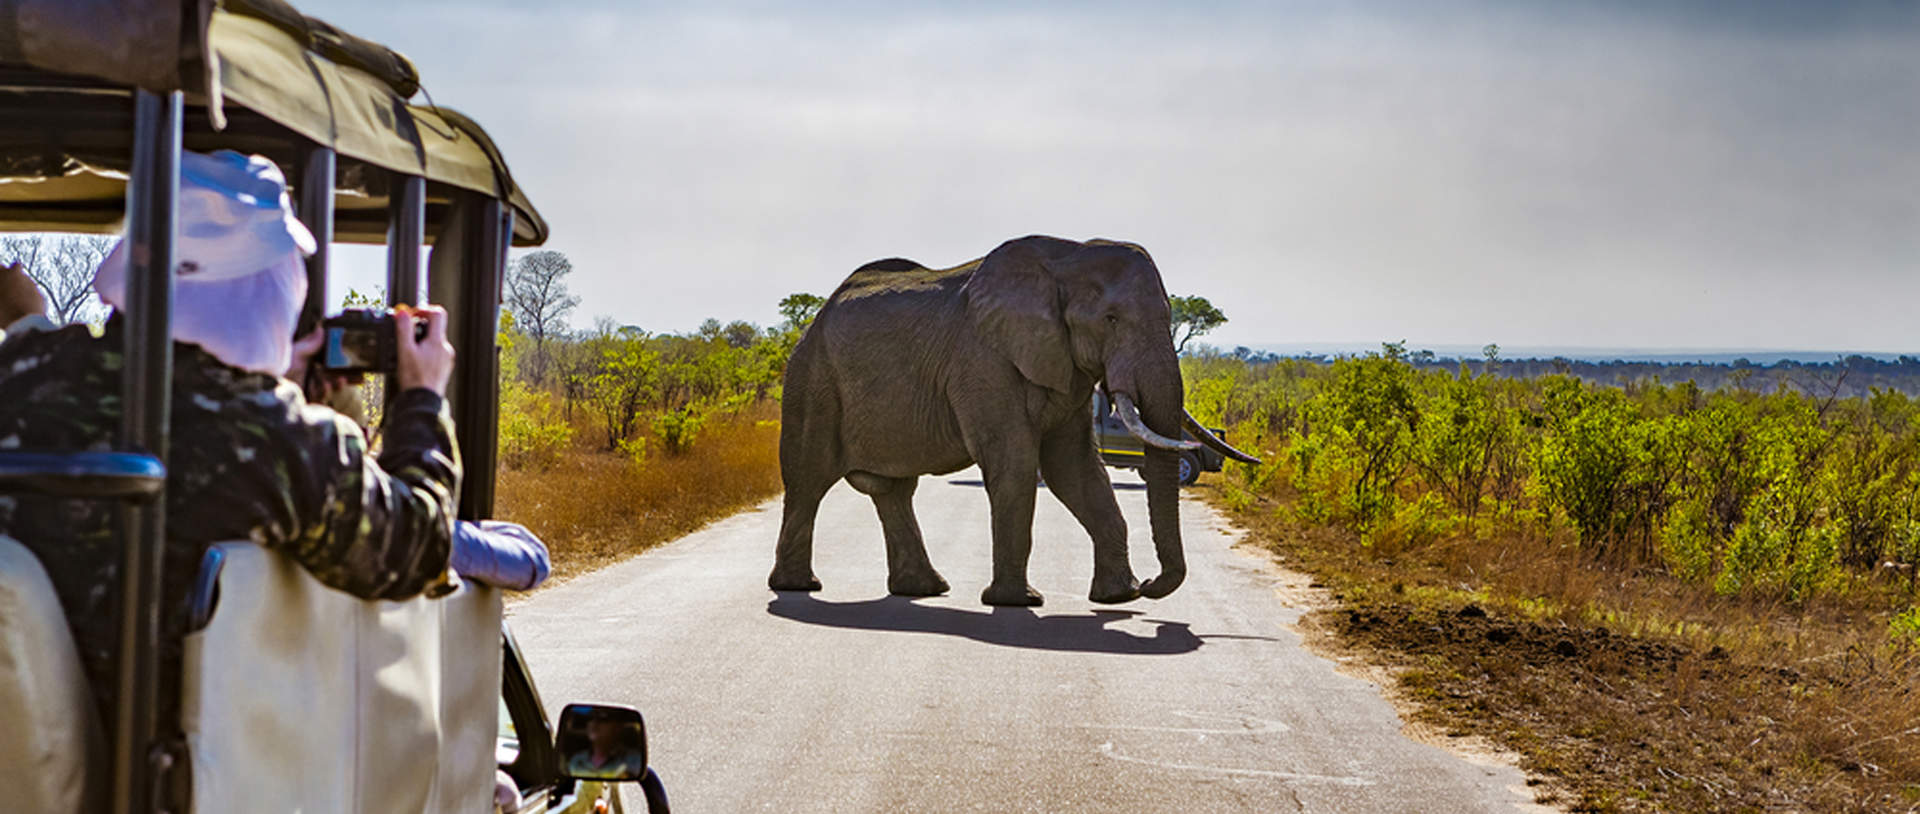 Safari In Kruger National Park African Elephants